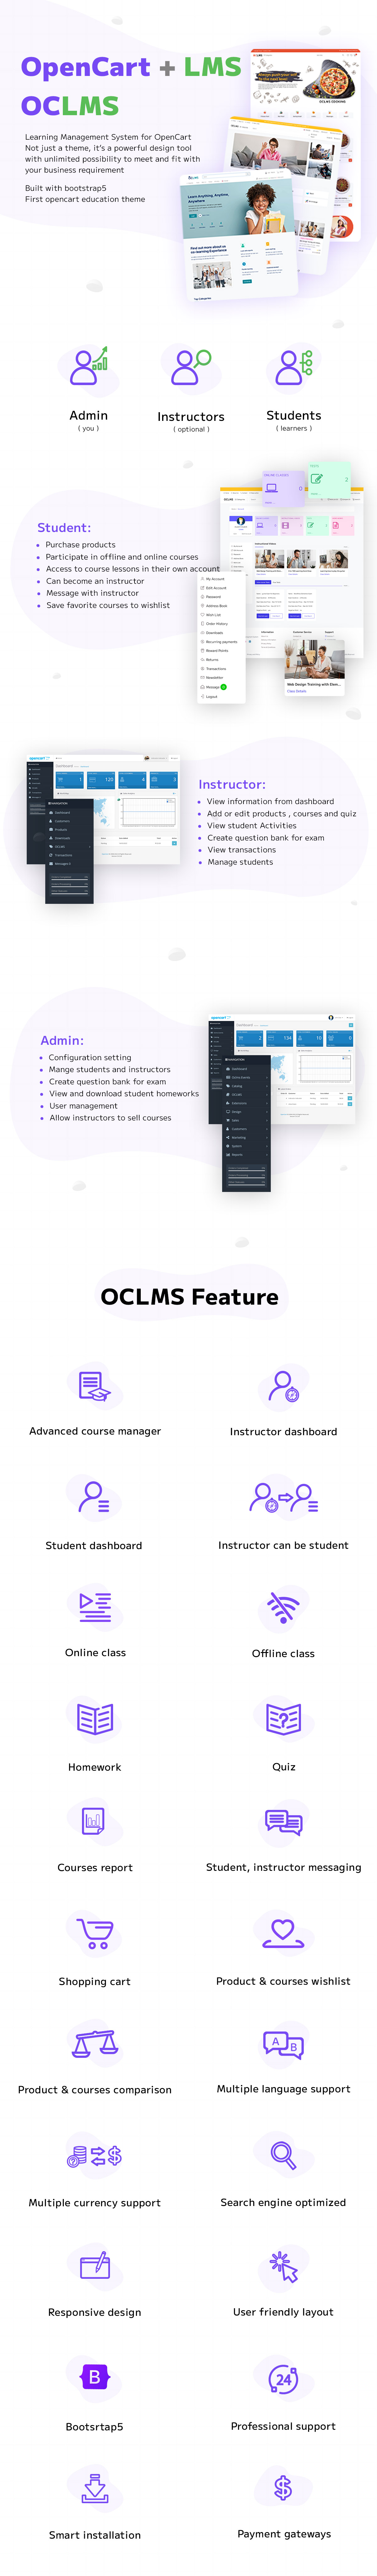 oclms features